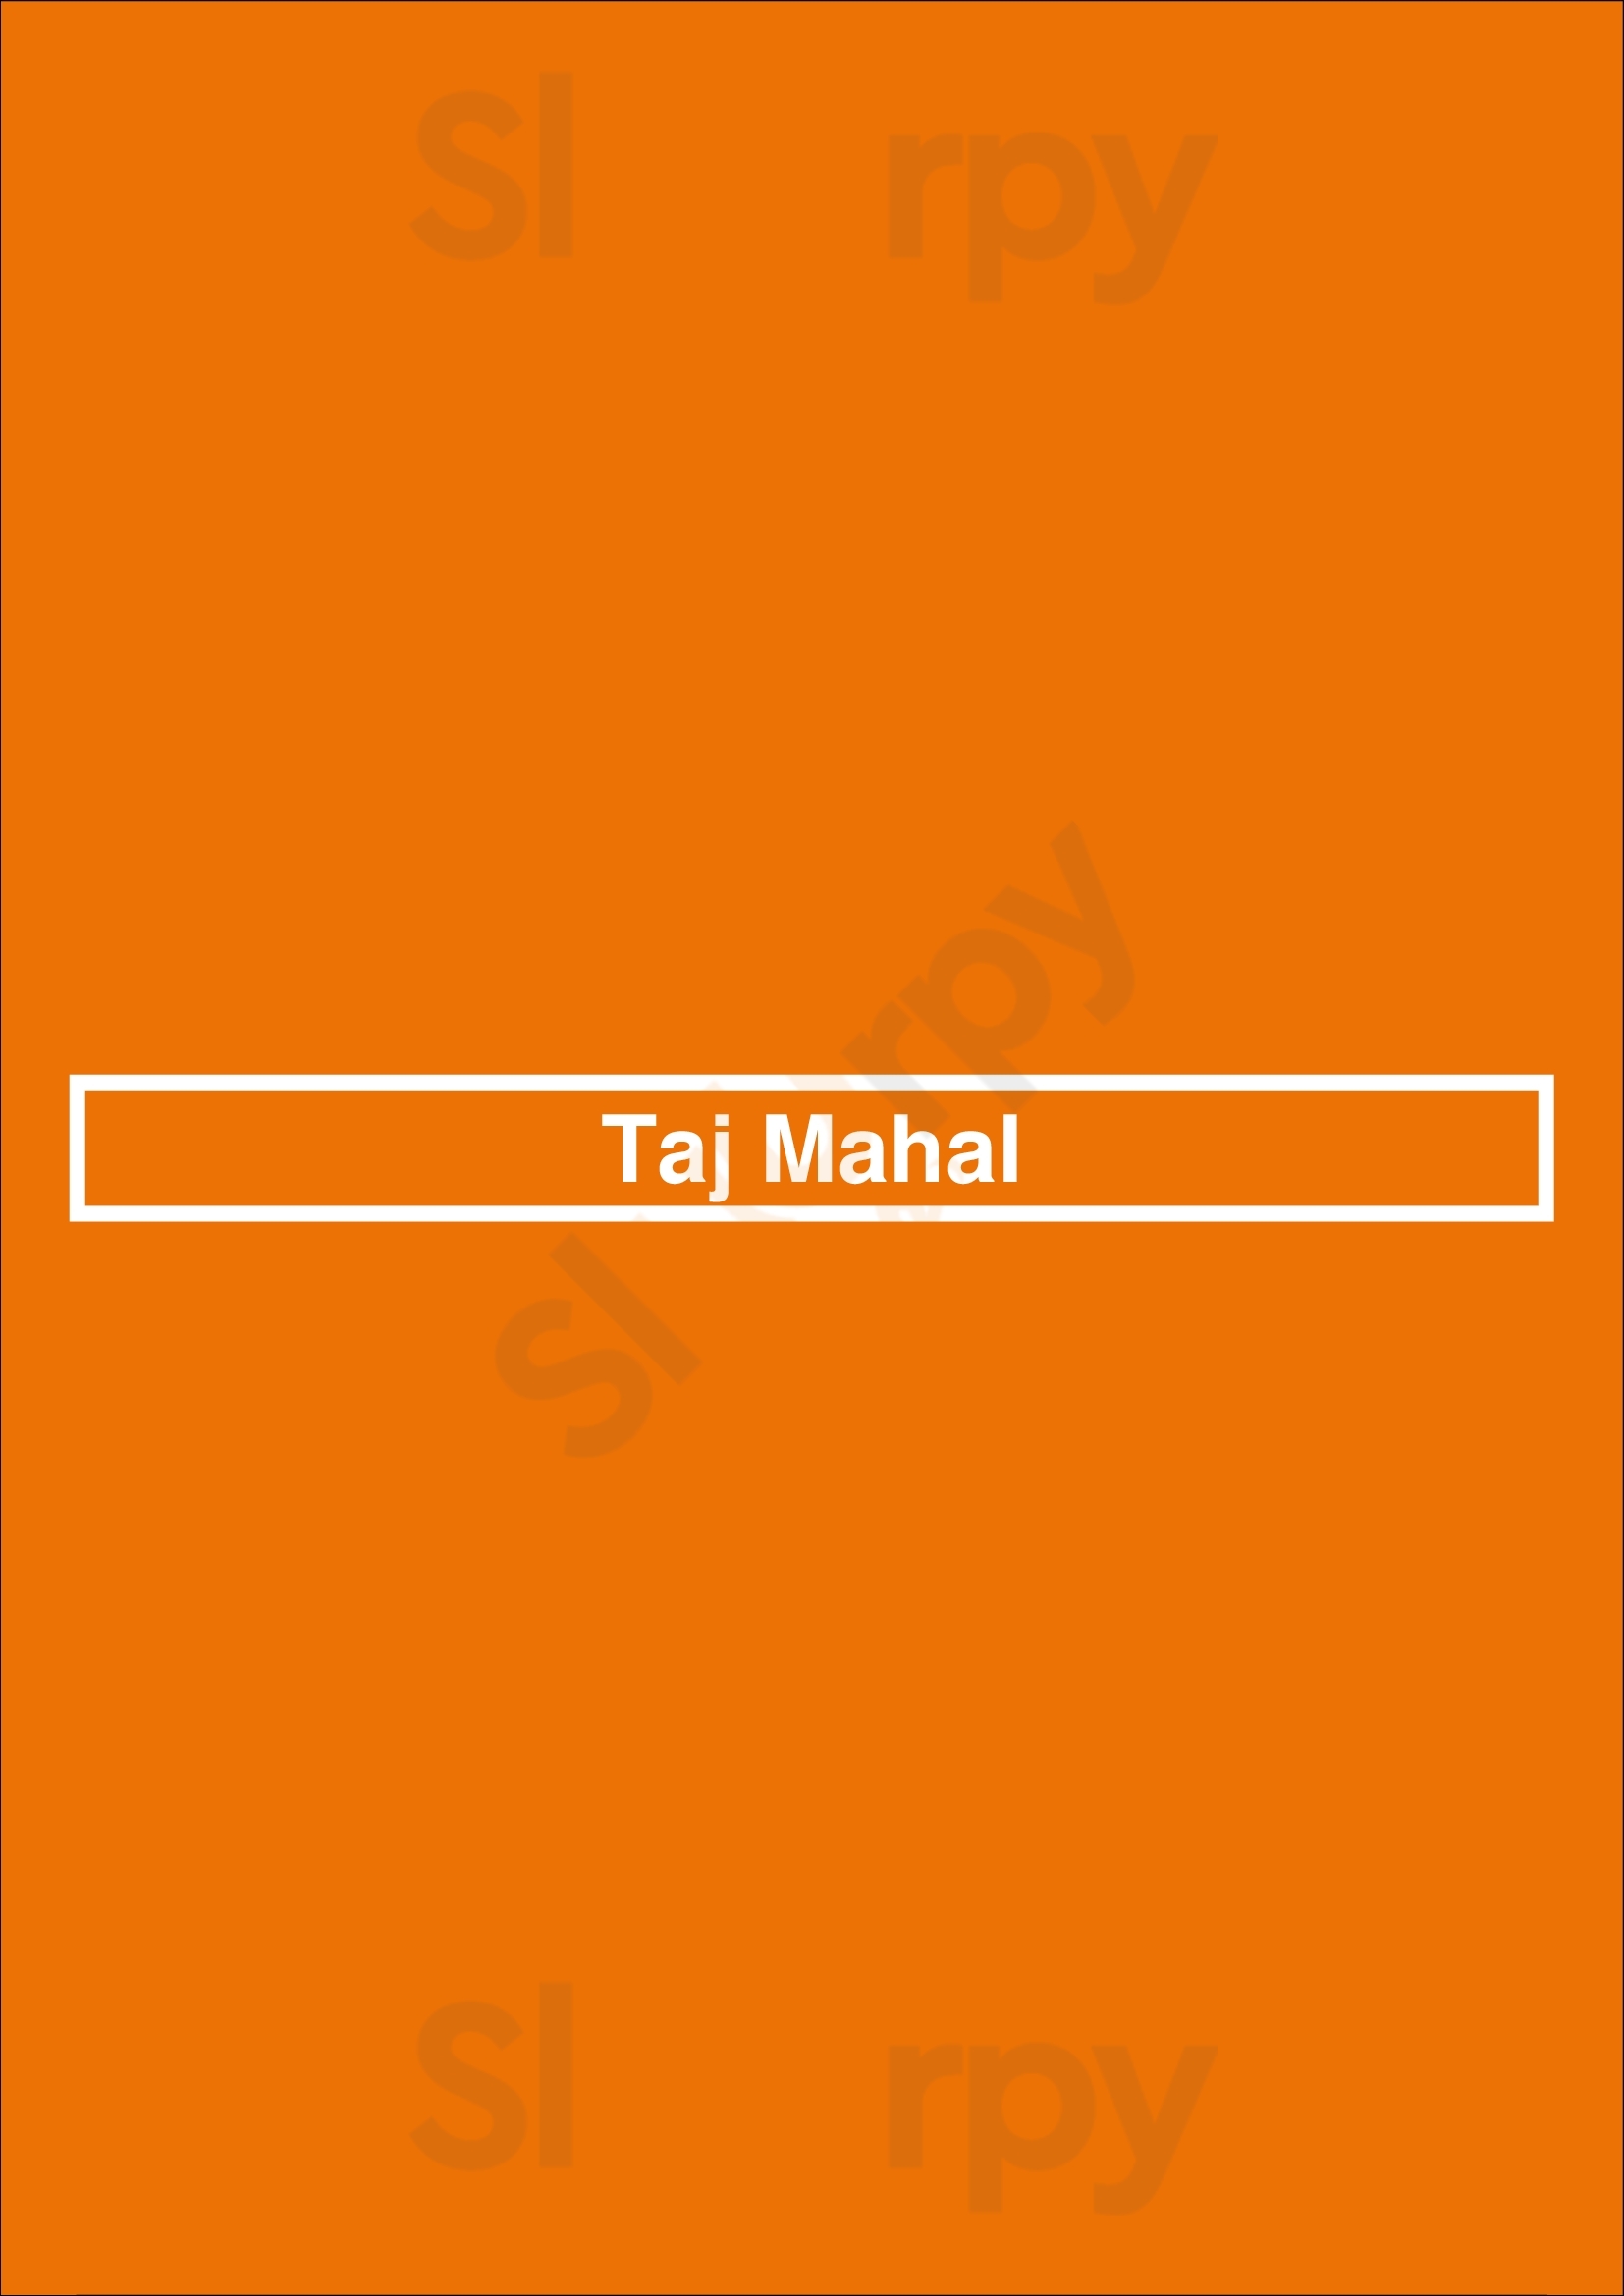 Taj Mahal De Koog Menu - 1